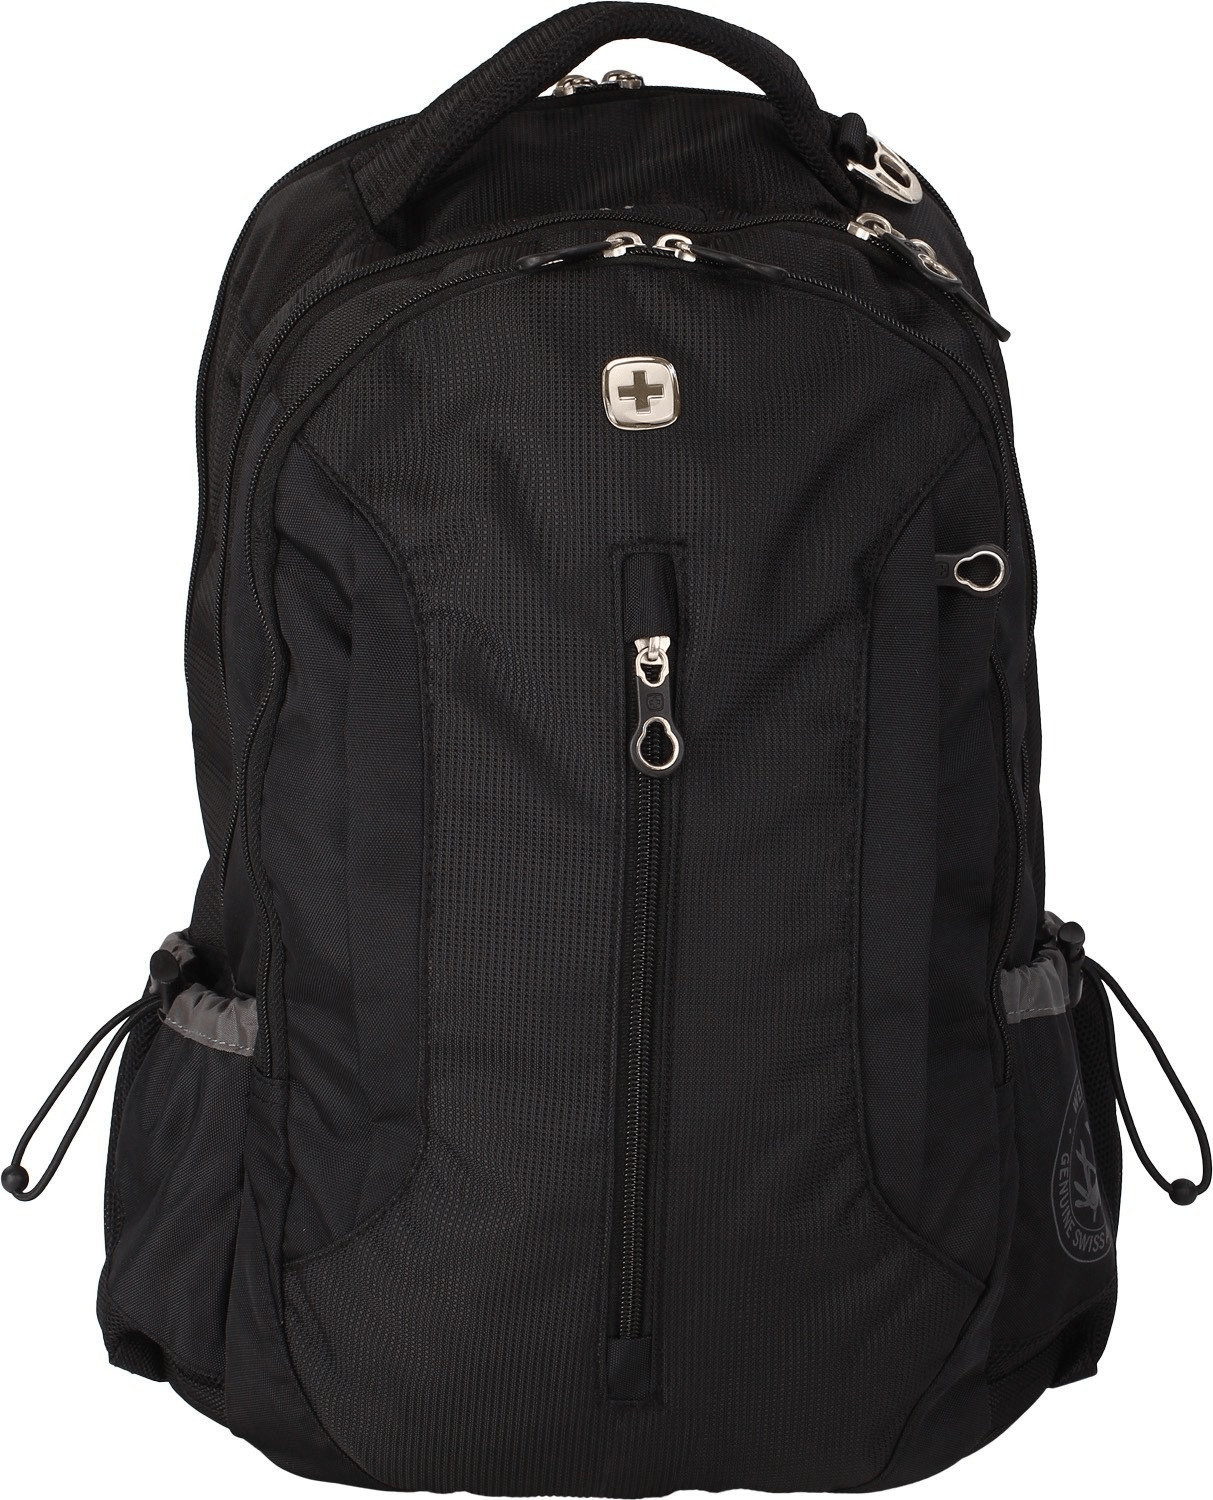 Wenger Laptop Backpack black (WG1288)